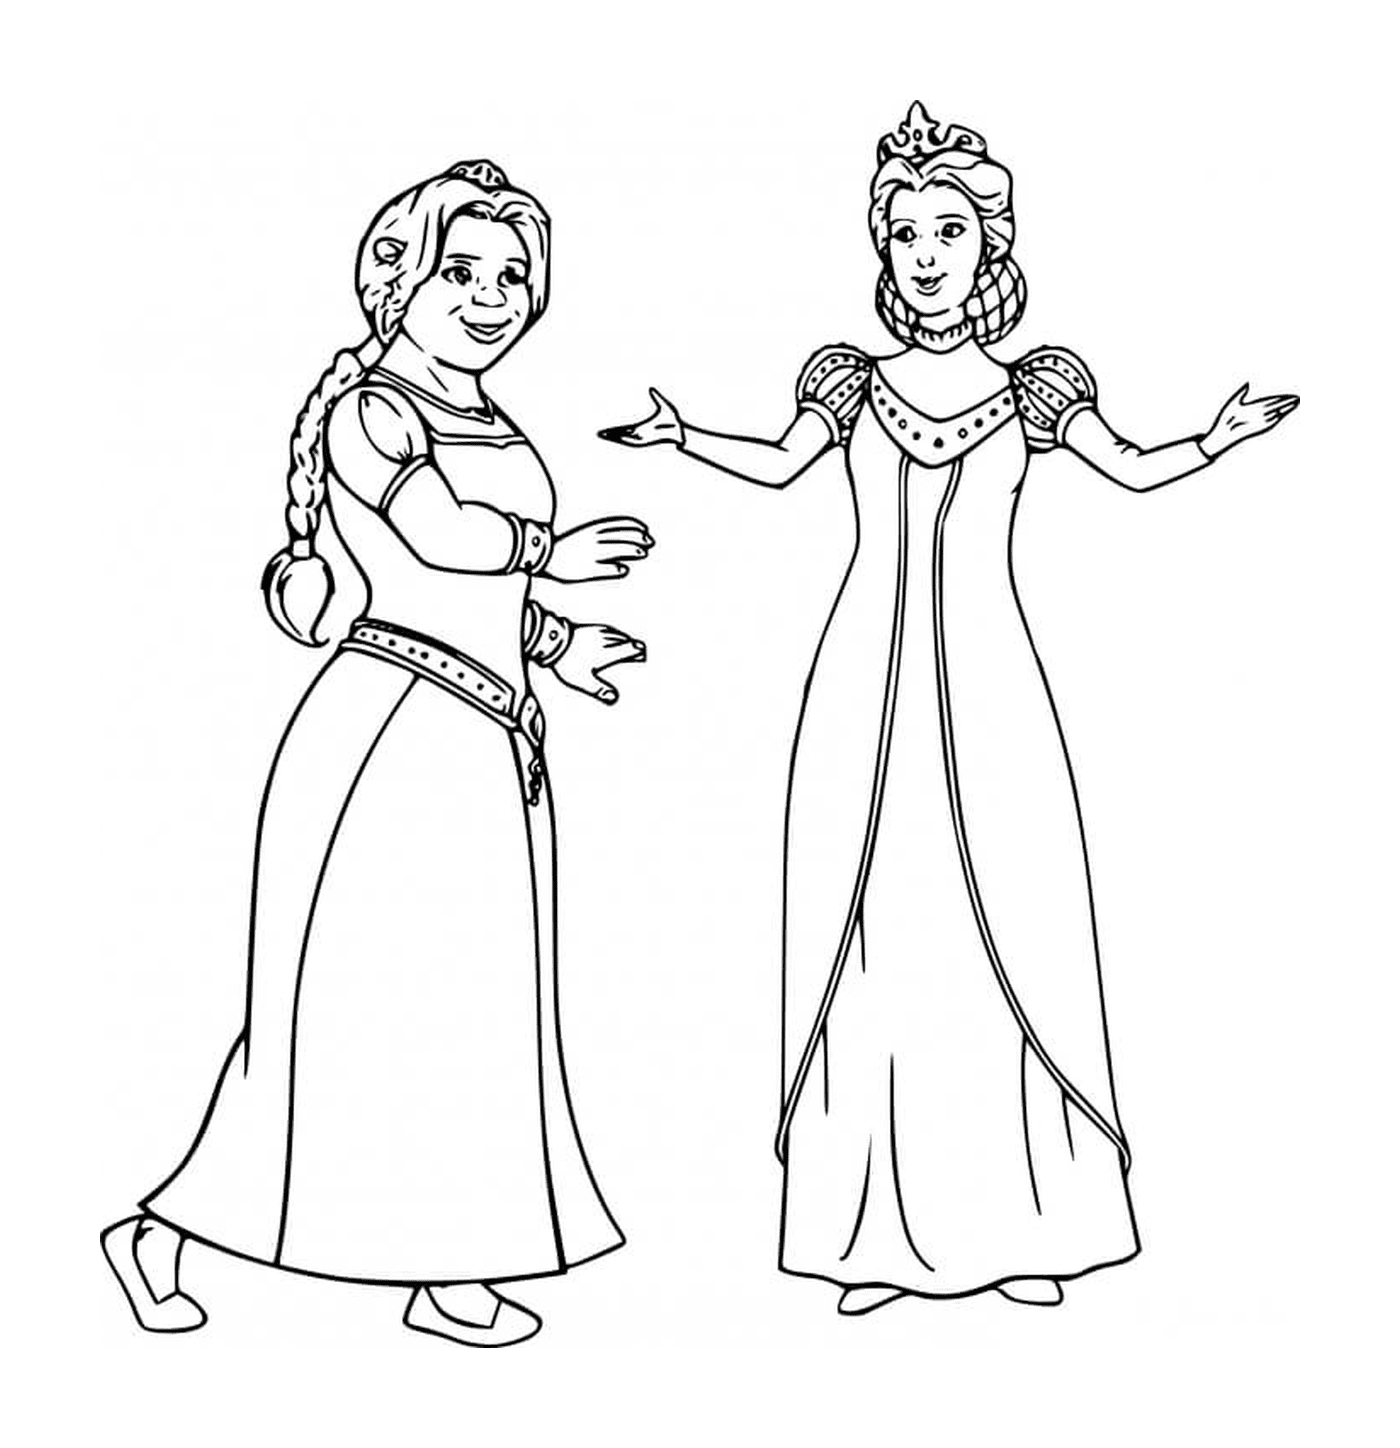  मध्य युग की पोशाक में दो औरतें 